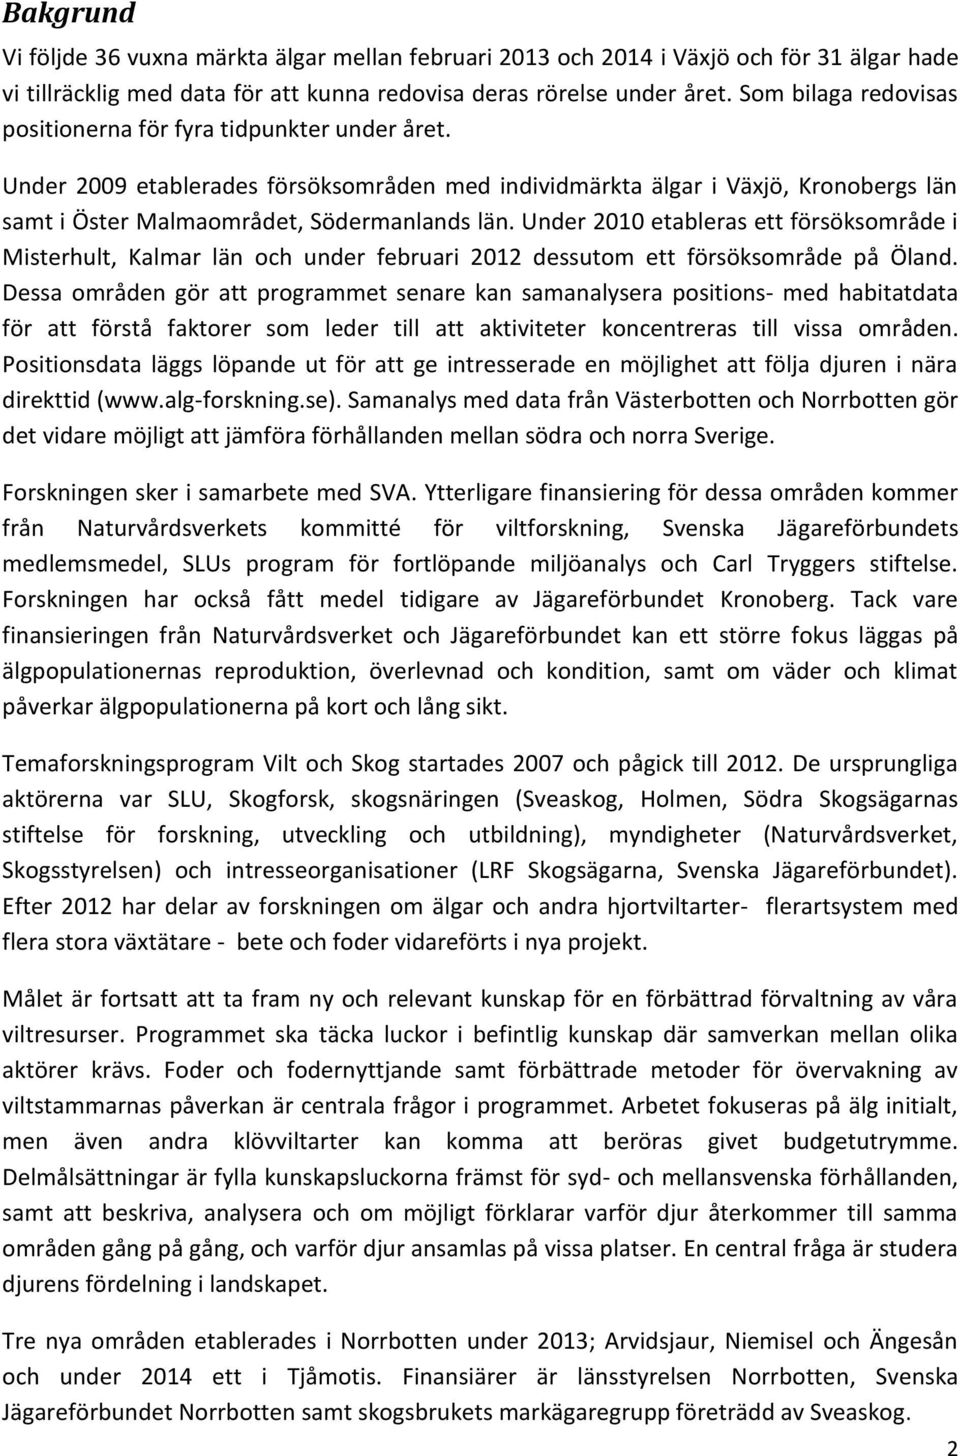 Under 2010 etableras ett försöksområde i Misterhult, Kalmar län och under februari 2012 dessutom ett försöksområde på Öland.